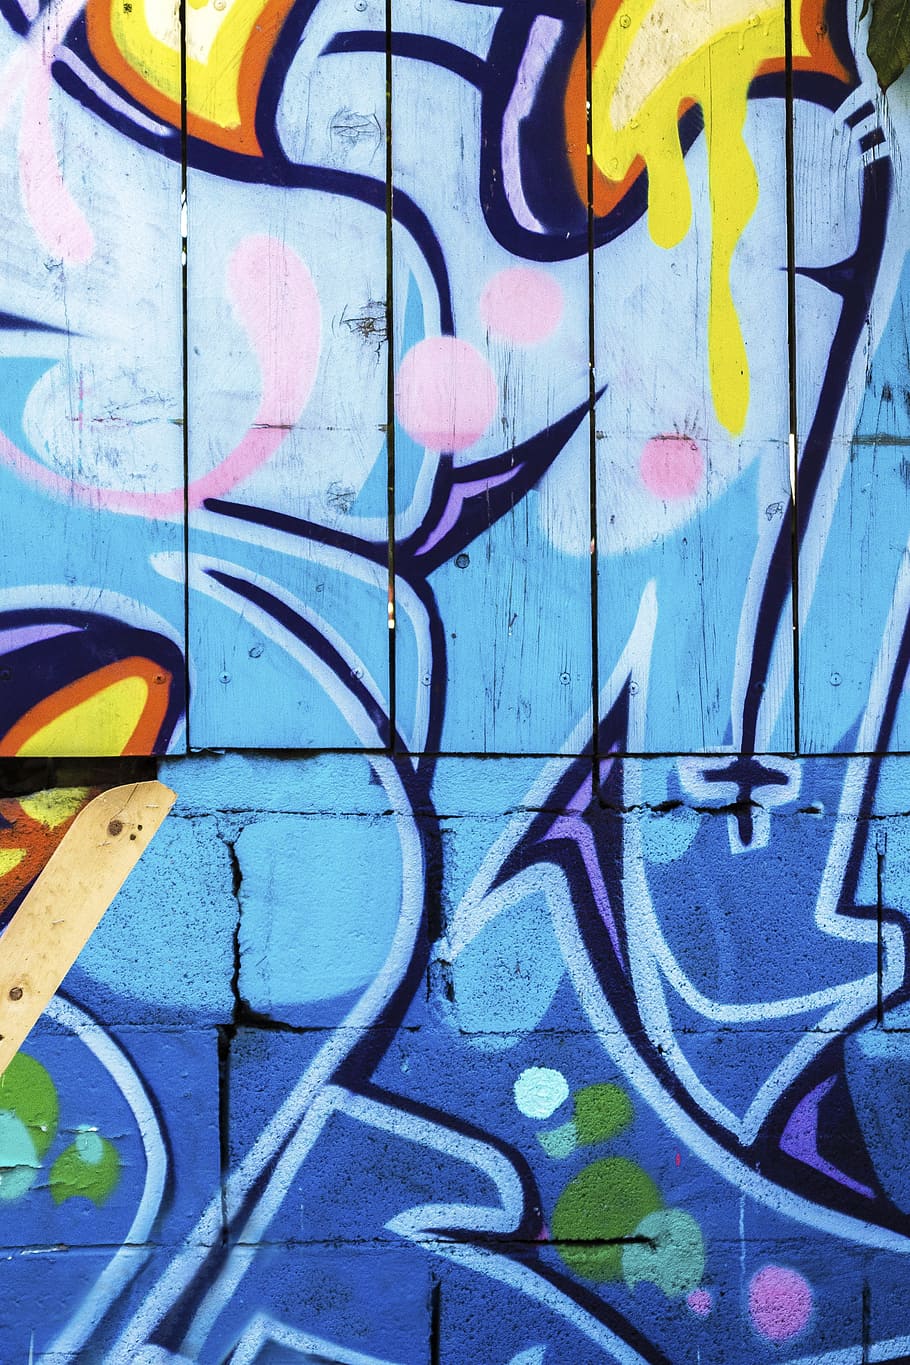 background, graffiti, grunge, street art, graffiti wall, graffiti art, artistic, painted, spray paint, art